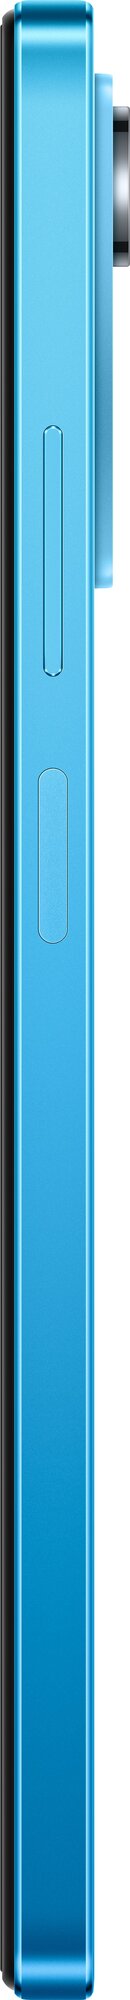 Смартфон Xiaomi - фото №9